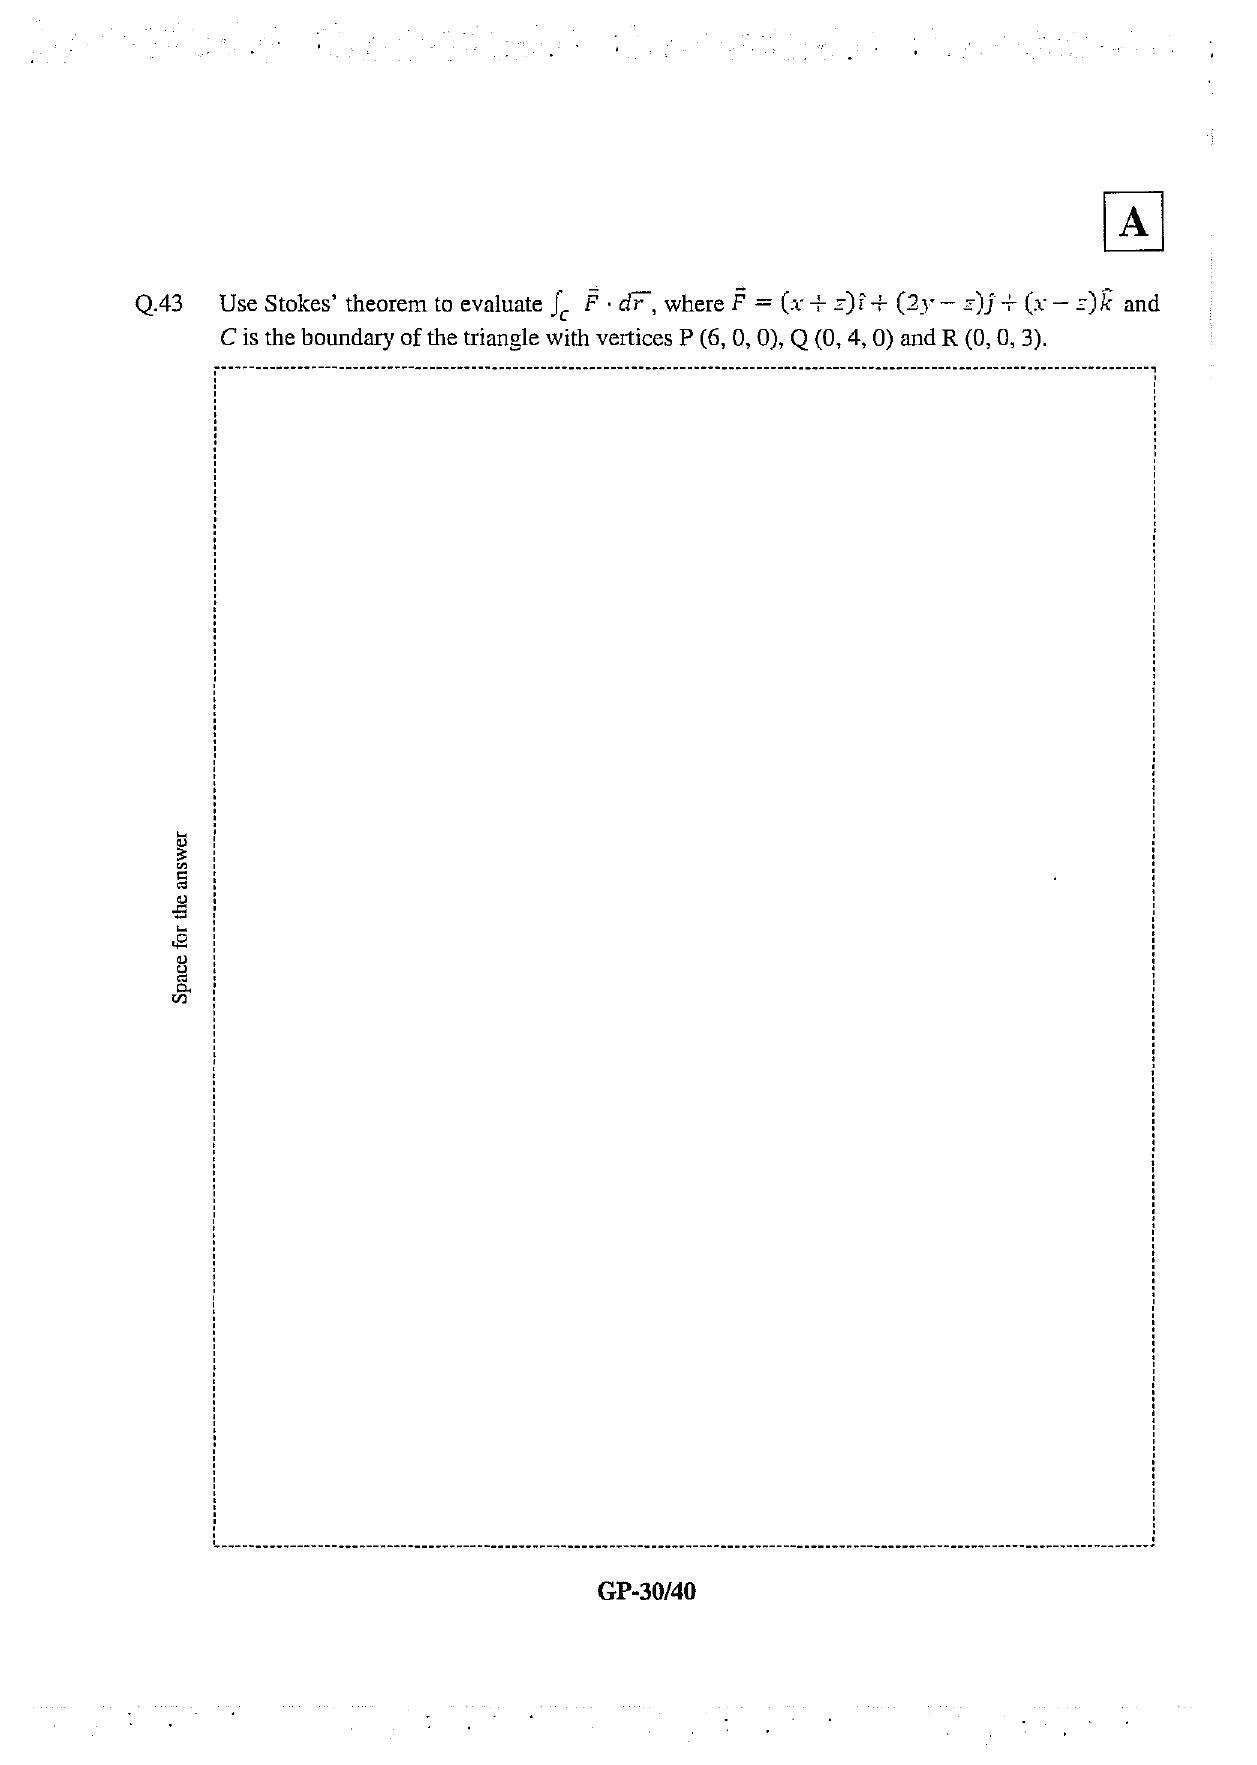 JAM 2013: GP Question Paper - Page 31